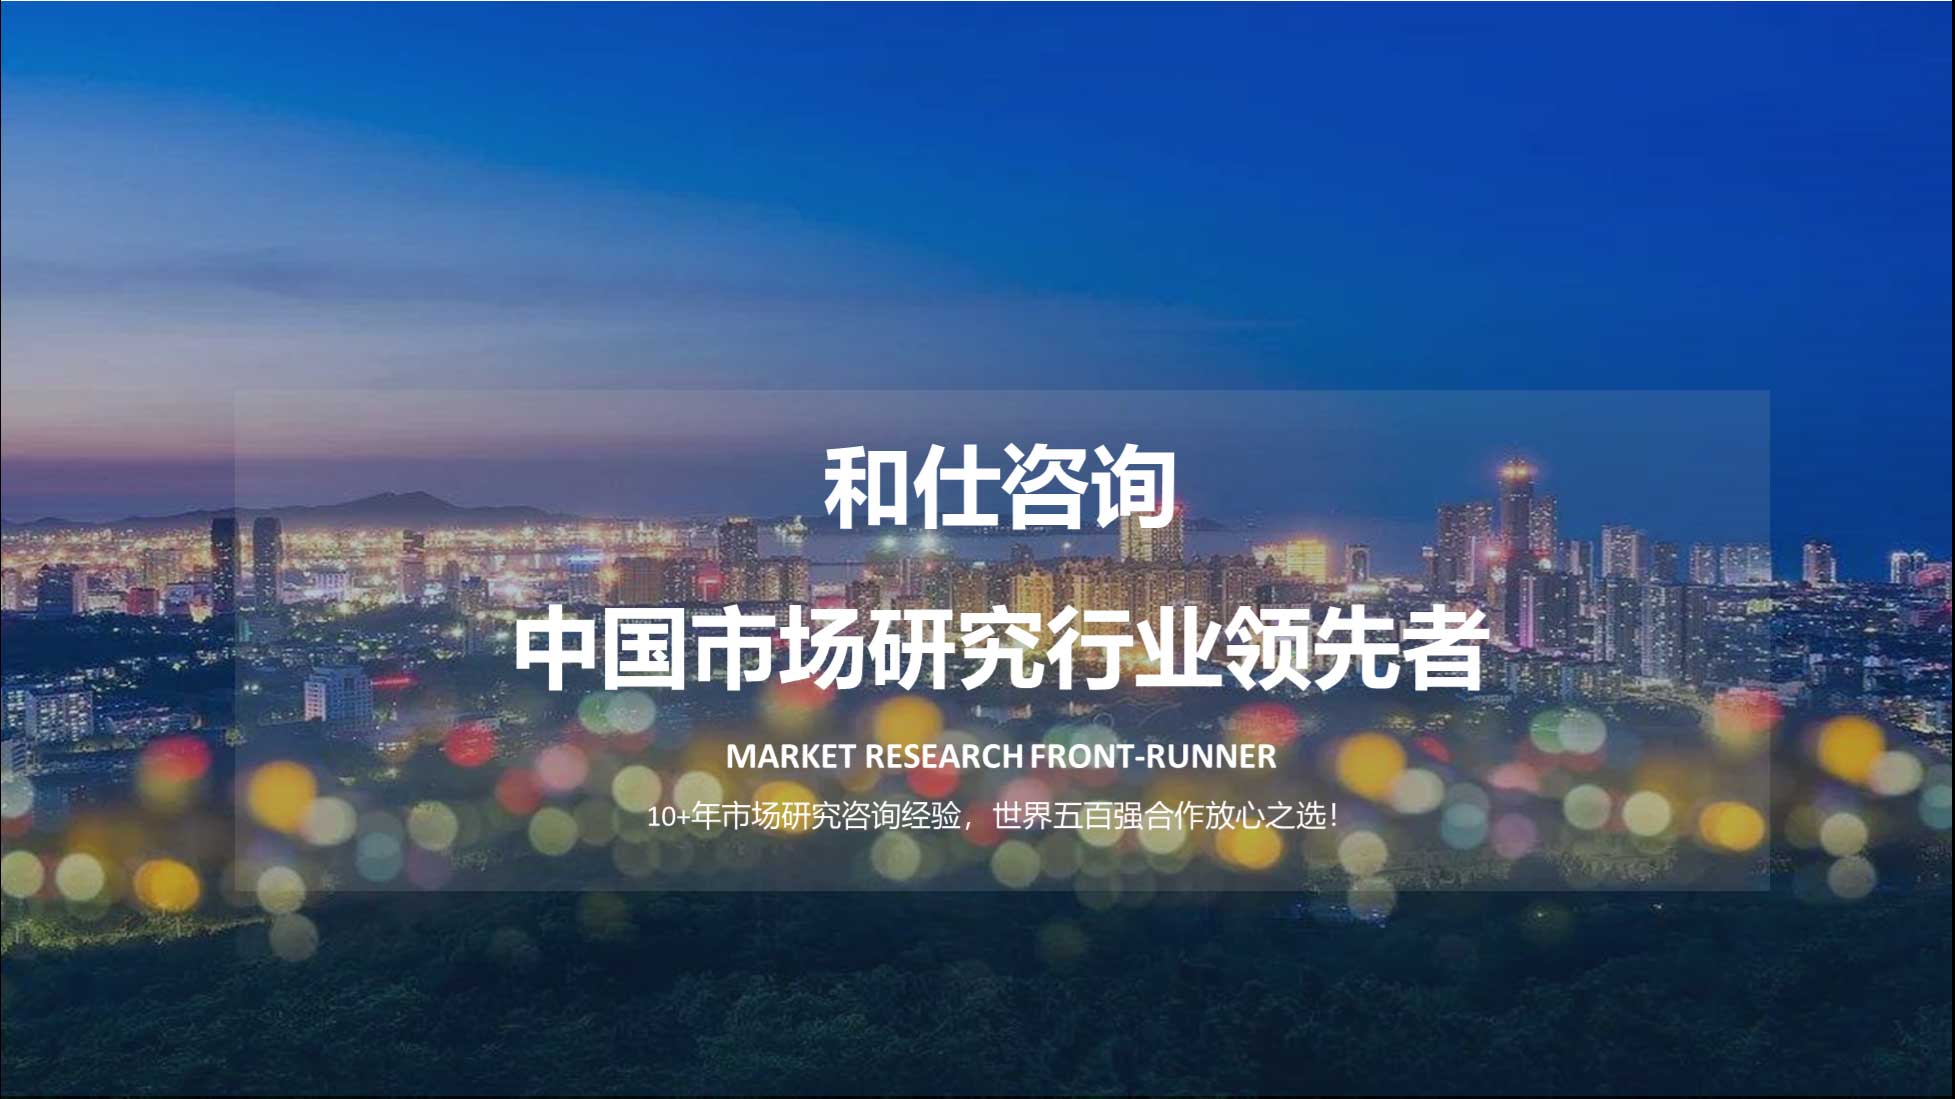 CA88(中国游)唯一官方网站